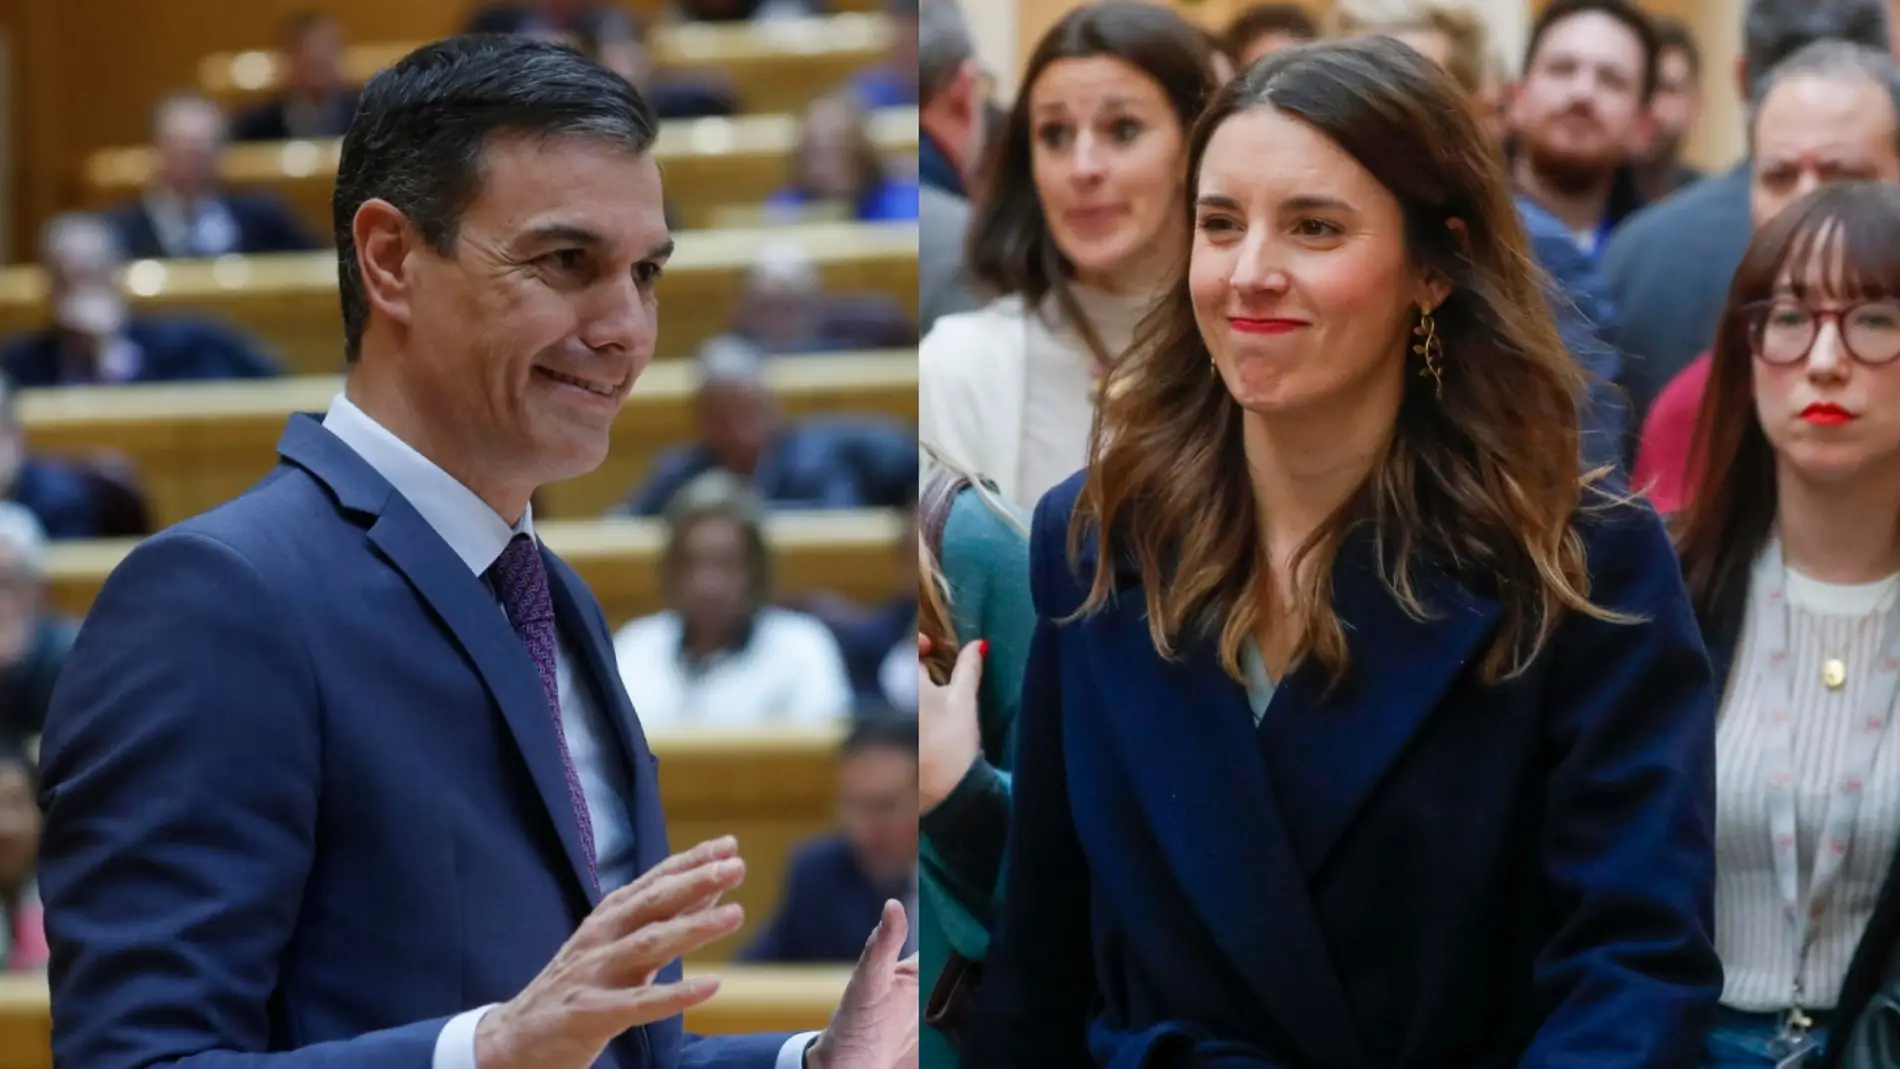 PSOE y Podemos no llegan a un acuerdo para reformar la ley del 'sólo sí es sí'